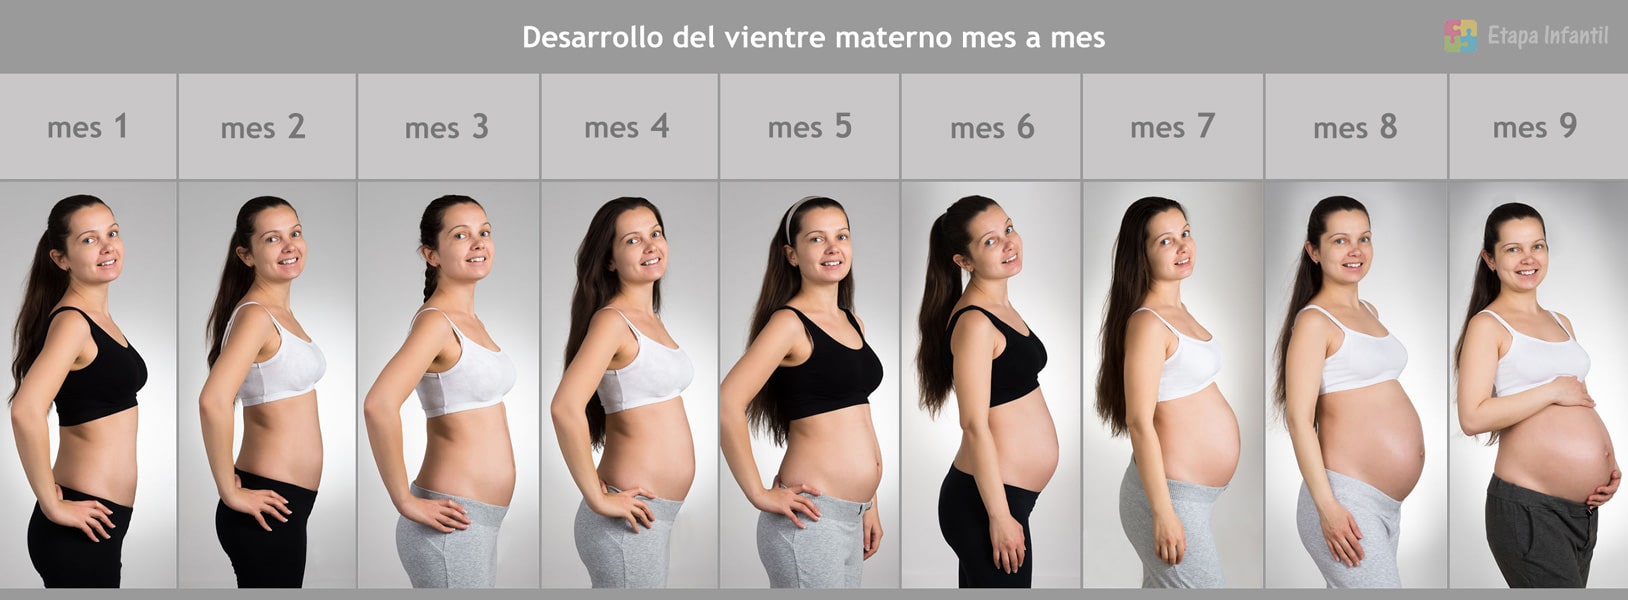 Живот по срокам недели. Живот у беременных по месяцам. Живот беременной женщины по неделям. Животики беременных по месяцам. Живот беременной по неделям у полных.